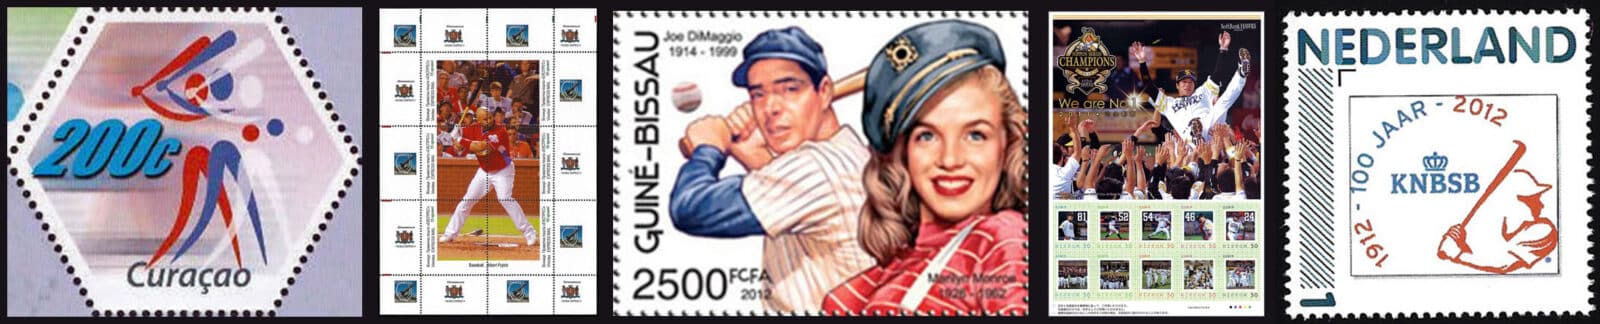 2012 Baseball Postage Stamps header